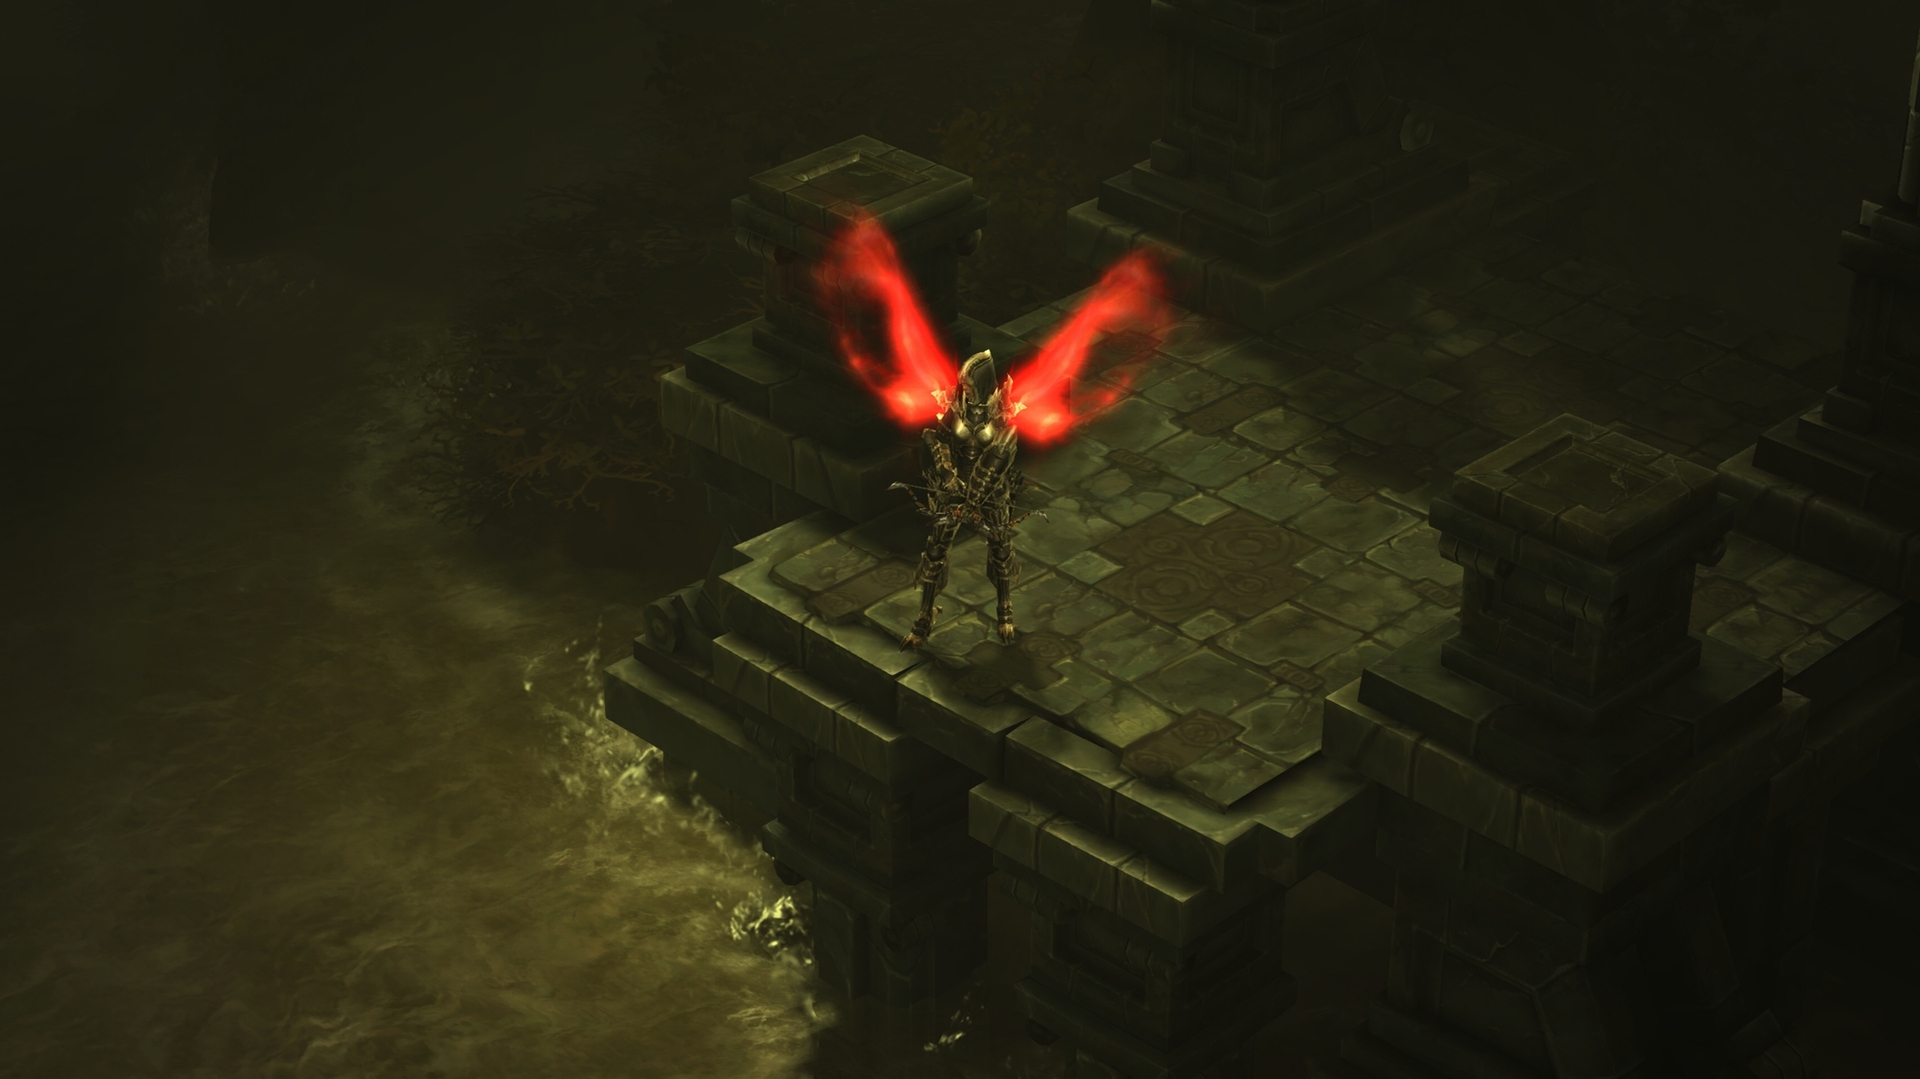 画像集 008 Xbox 360版 Diablo Iii のマルチプレイデモがe3 13会場で展示 海外で9月3日に発売されるパッケージの新情報も公開に 4gamer Net